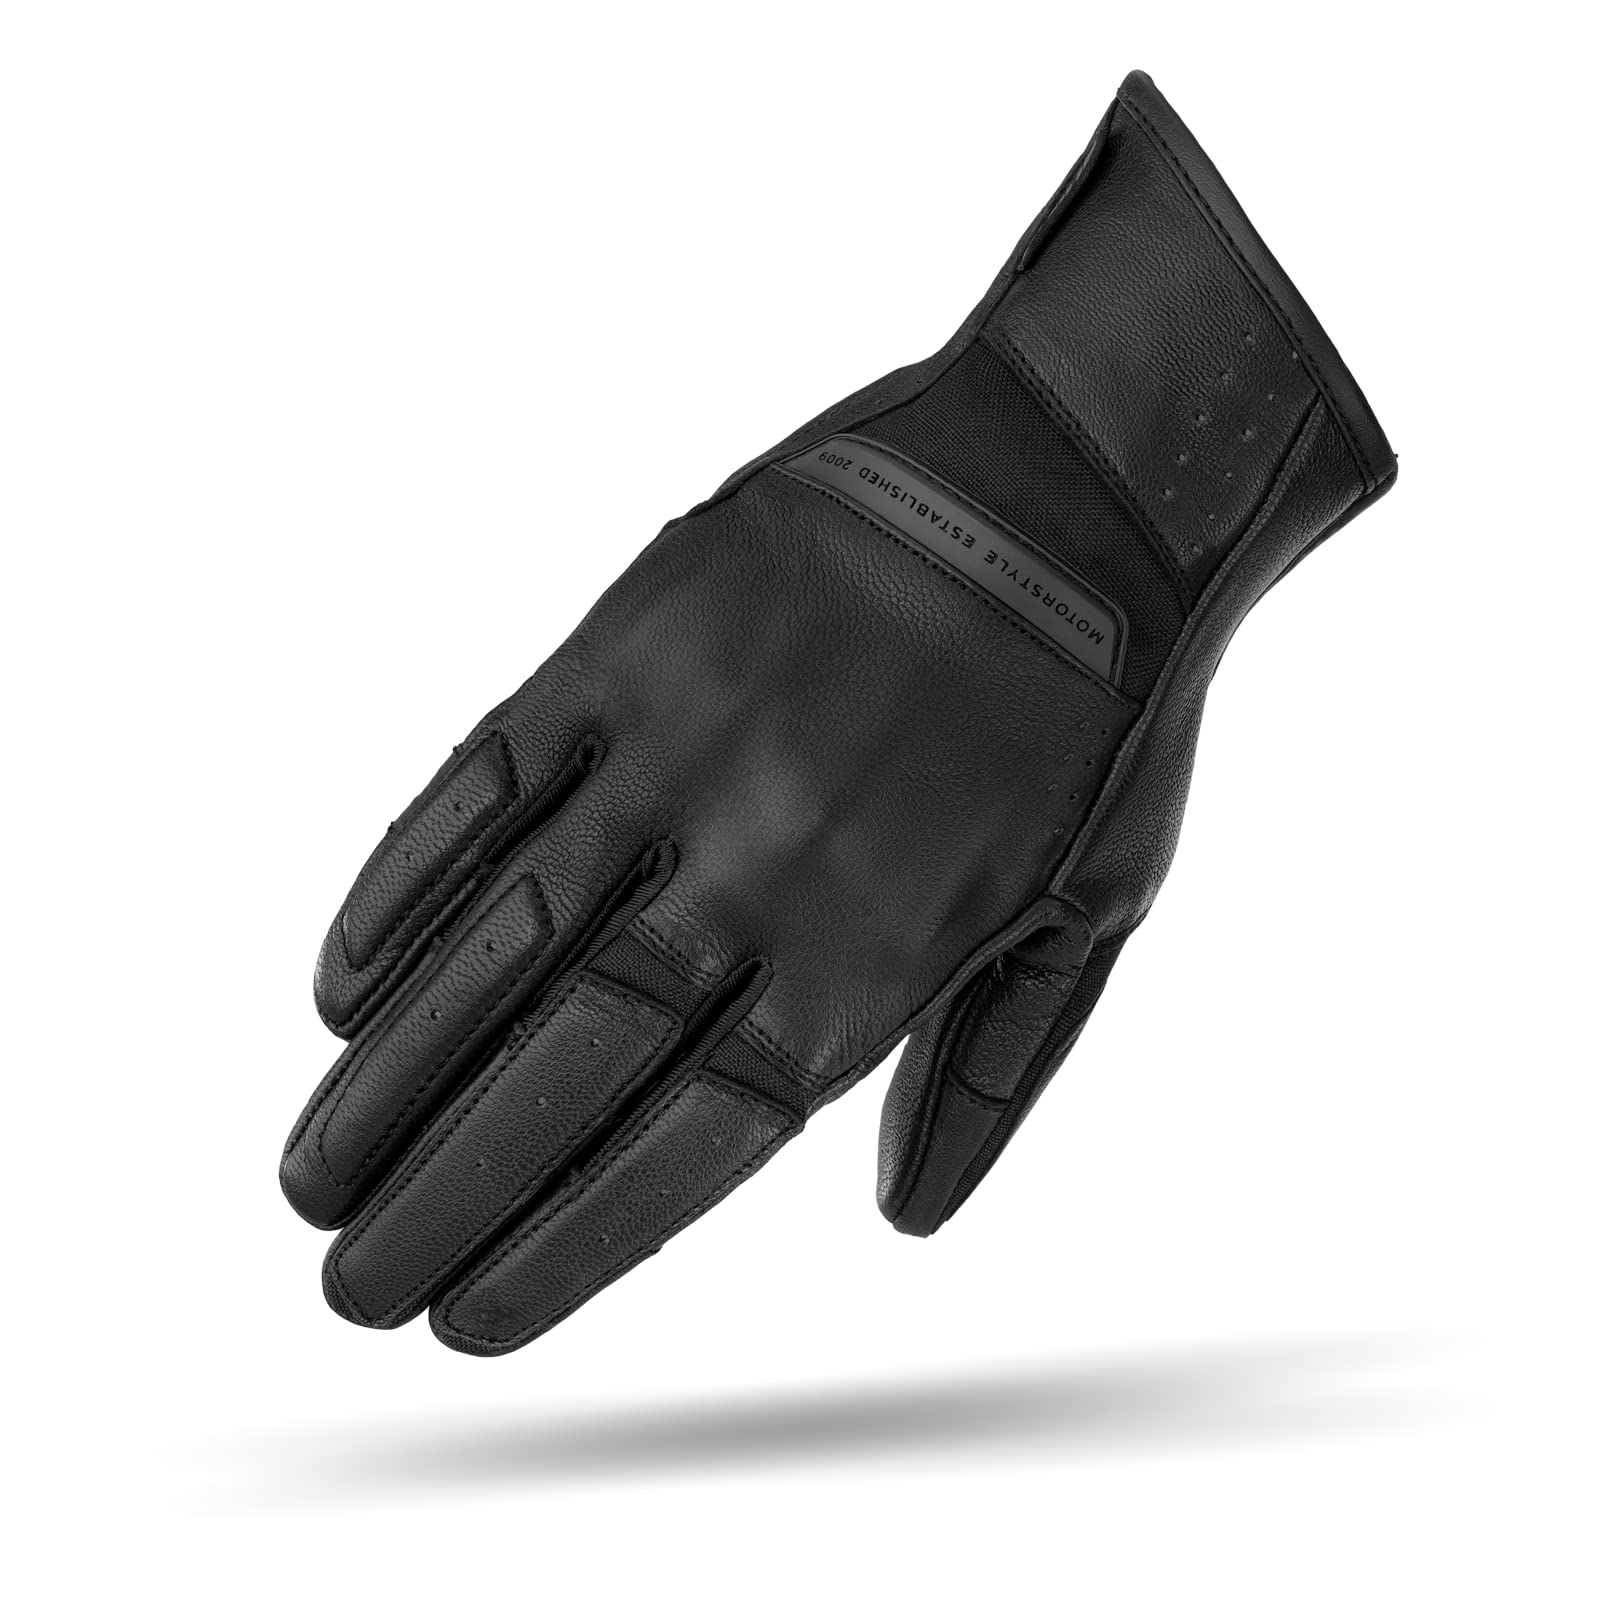 SHIMA Monaco Motorradhandschuhe Damen - Atmungsaktive, Elastische, Touchscreen, Vintage Handschuhe aus Leder mit Knöchelprotektor, Knöchel Aufpralldämpfer, Verstärkte Handfläche (Schwarz, XS) von SHIMA